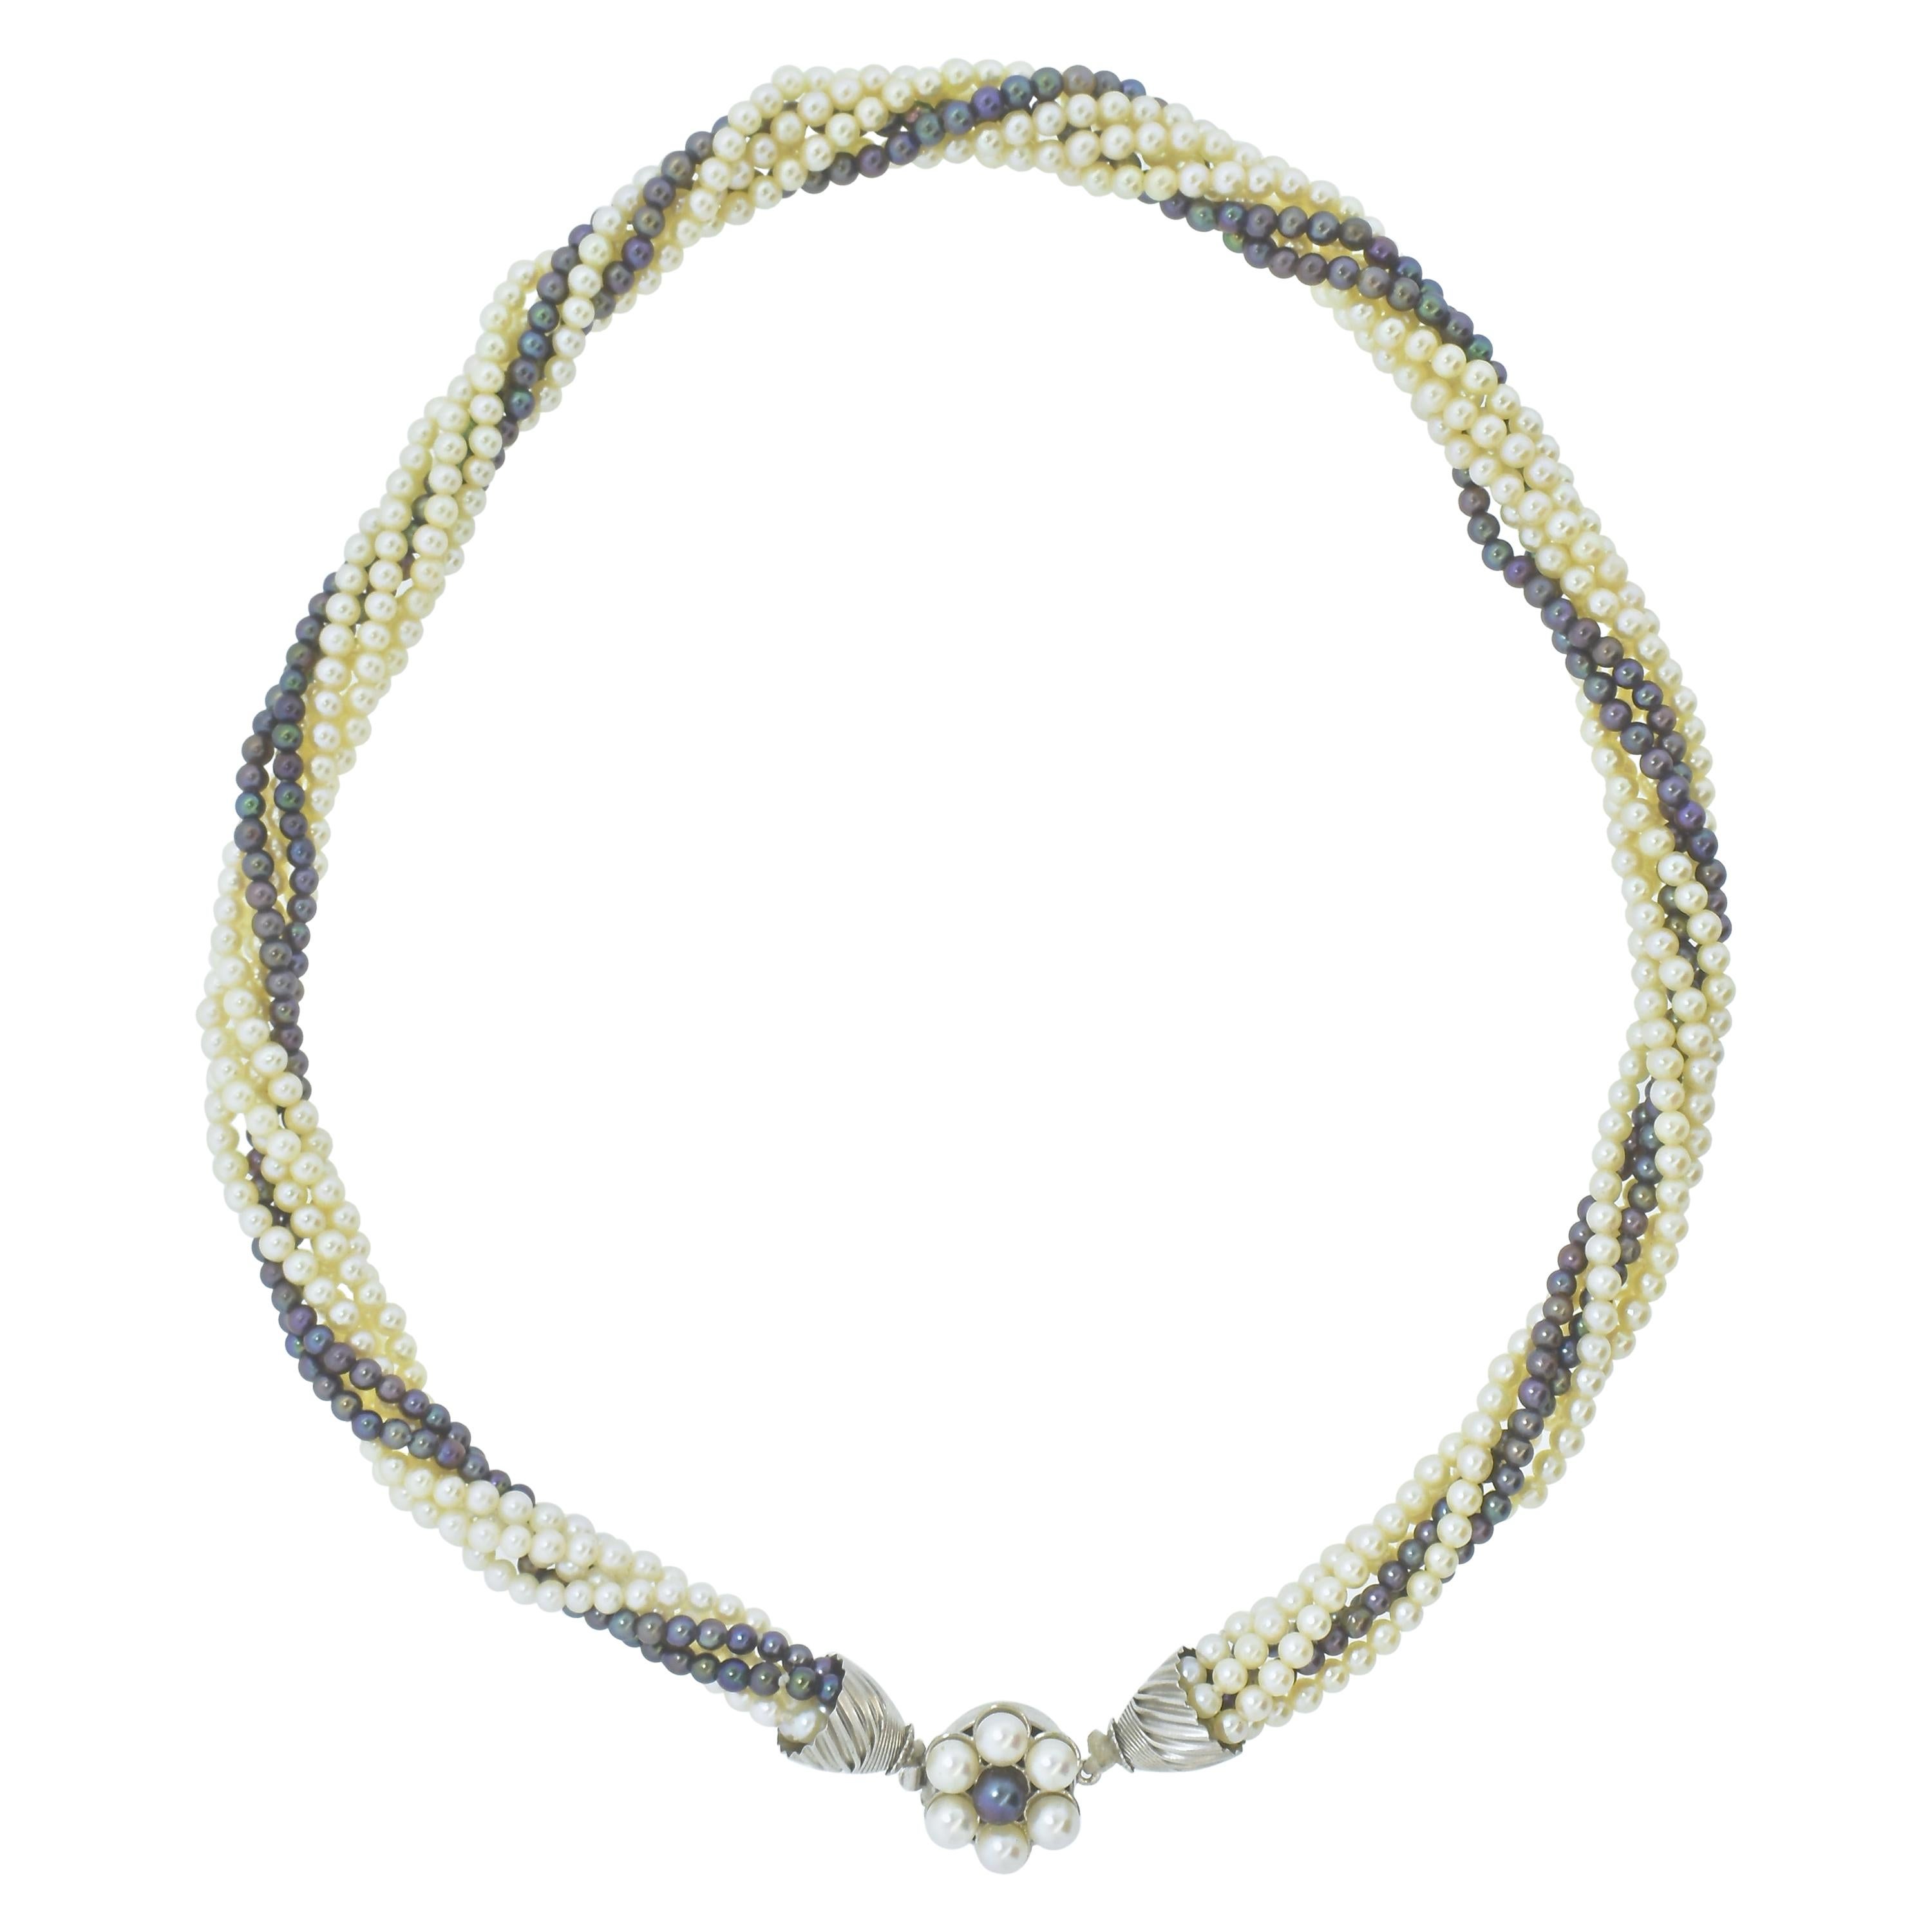 Perlenkette, die sowohl feine weiße als auch schwarze Perlen enthält.  Diese Perlen haben eine Größe von 2,5 mm bis 3,0 mm.  Man kann diese schöne Halskette leicht gedreht oder mehr tragen, je nachdem, wie lang man sie haben möchte.  In jedem Fall